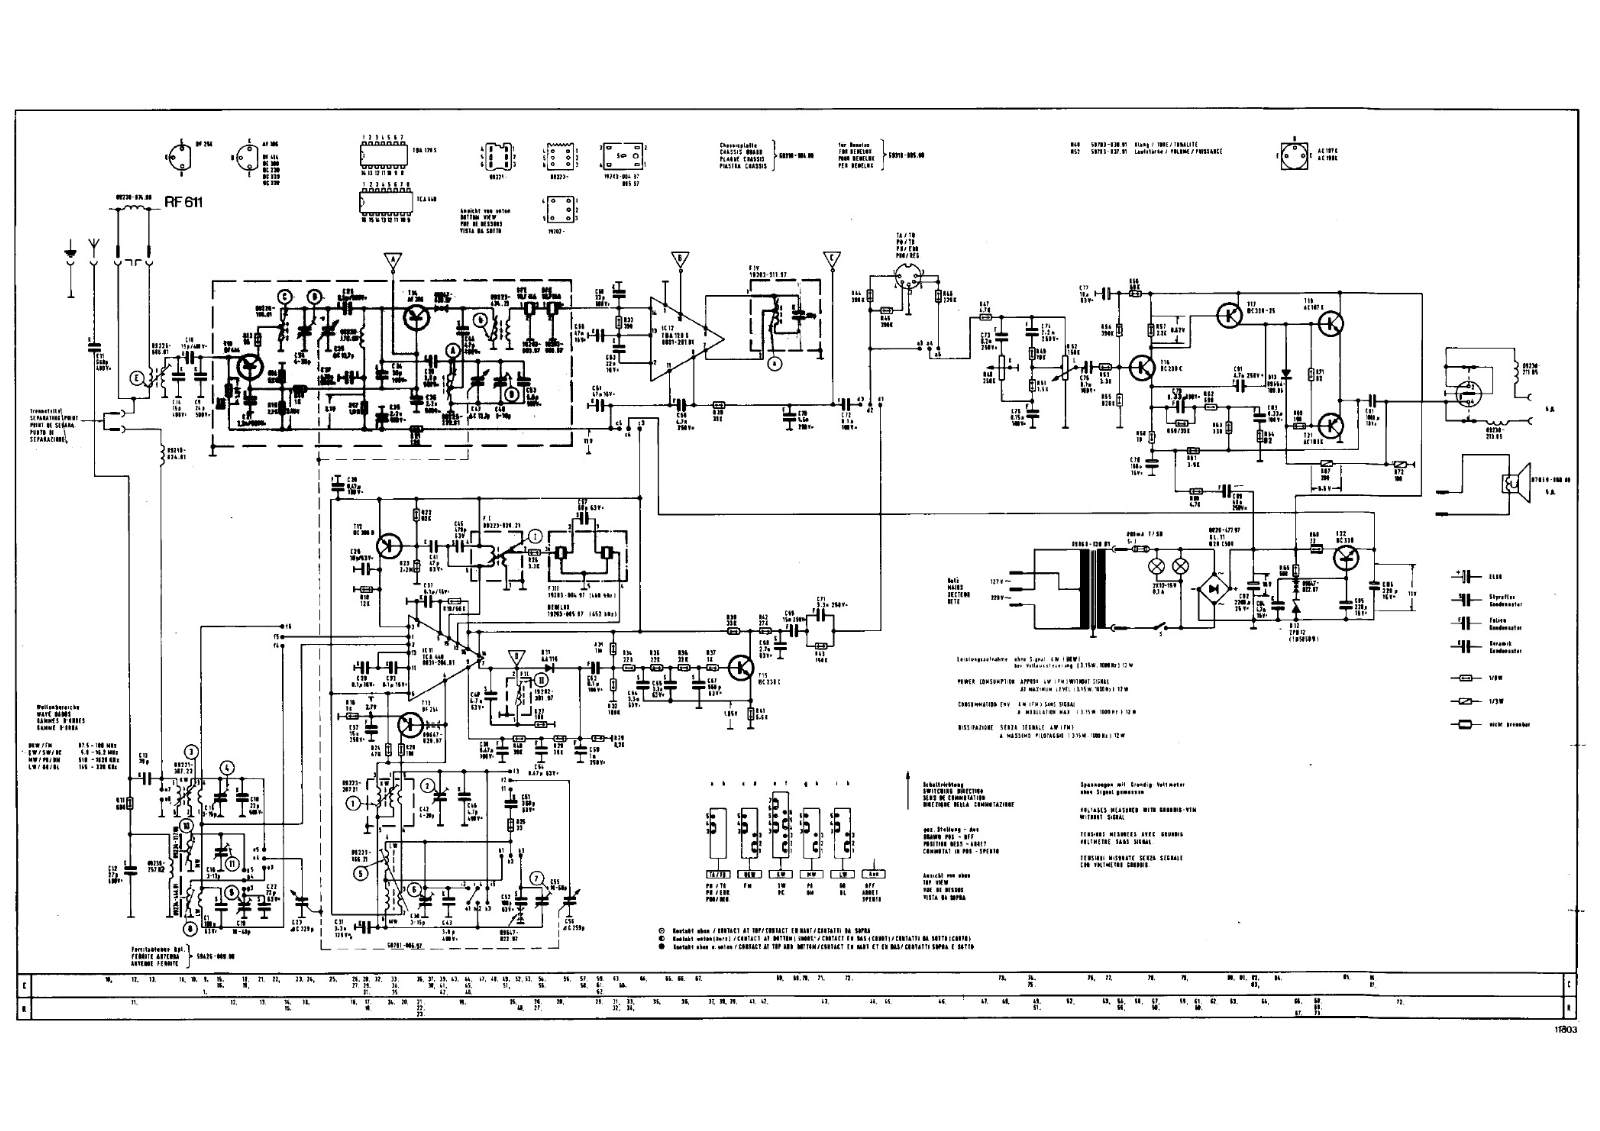 Grundig rf611 schematic